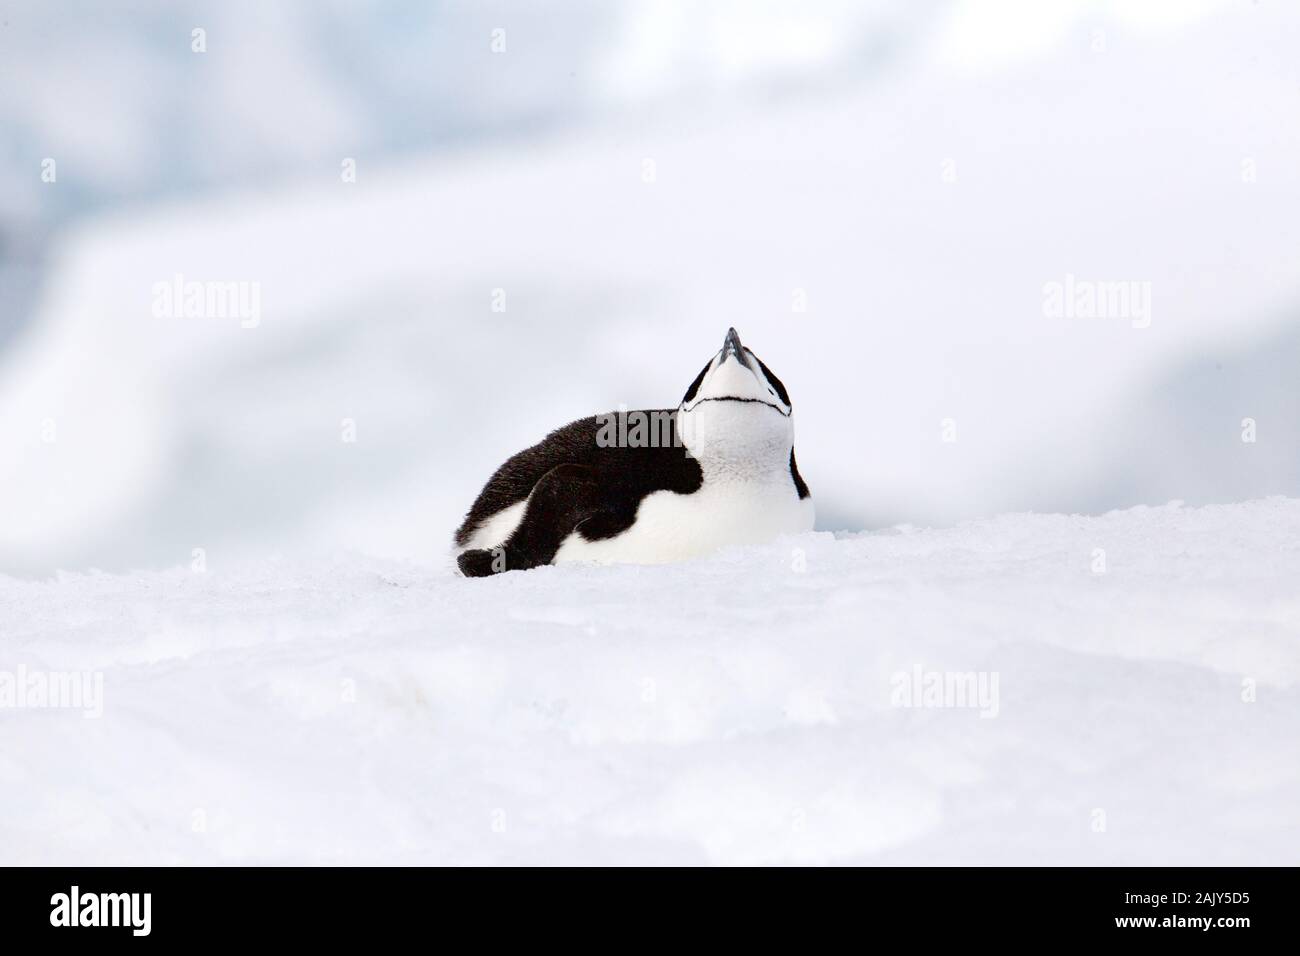 Jugulaire penguin, Antarctique Banque D'Images